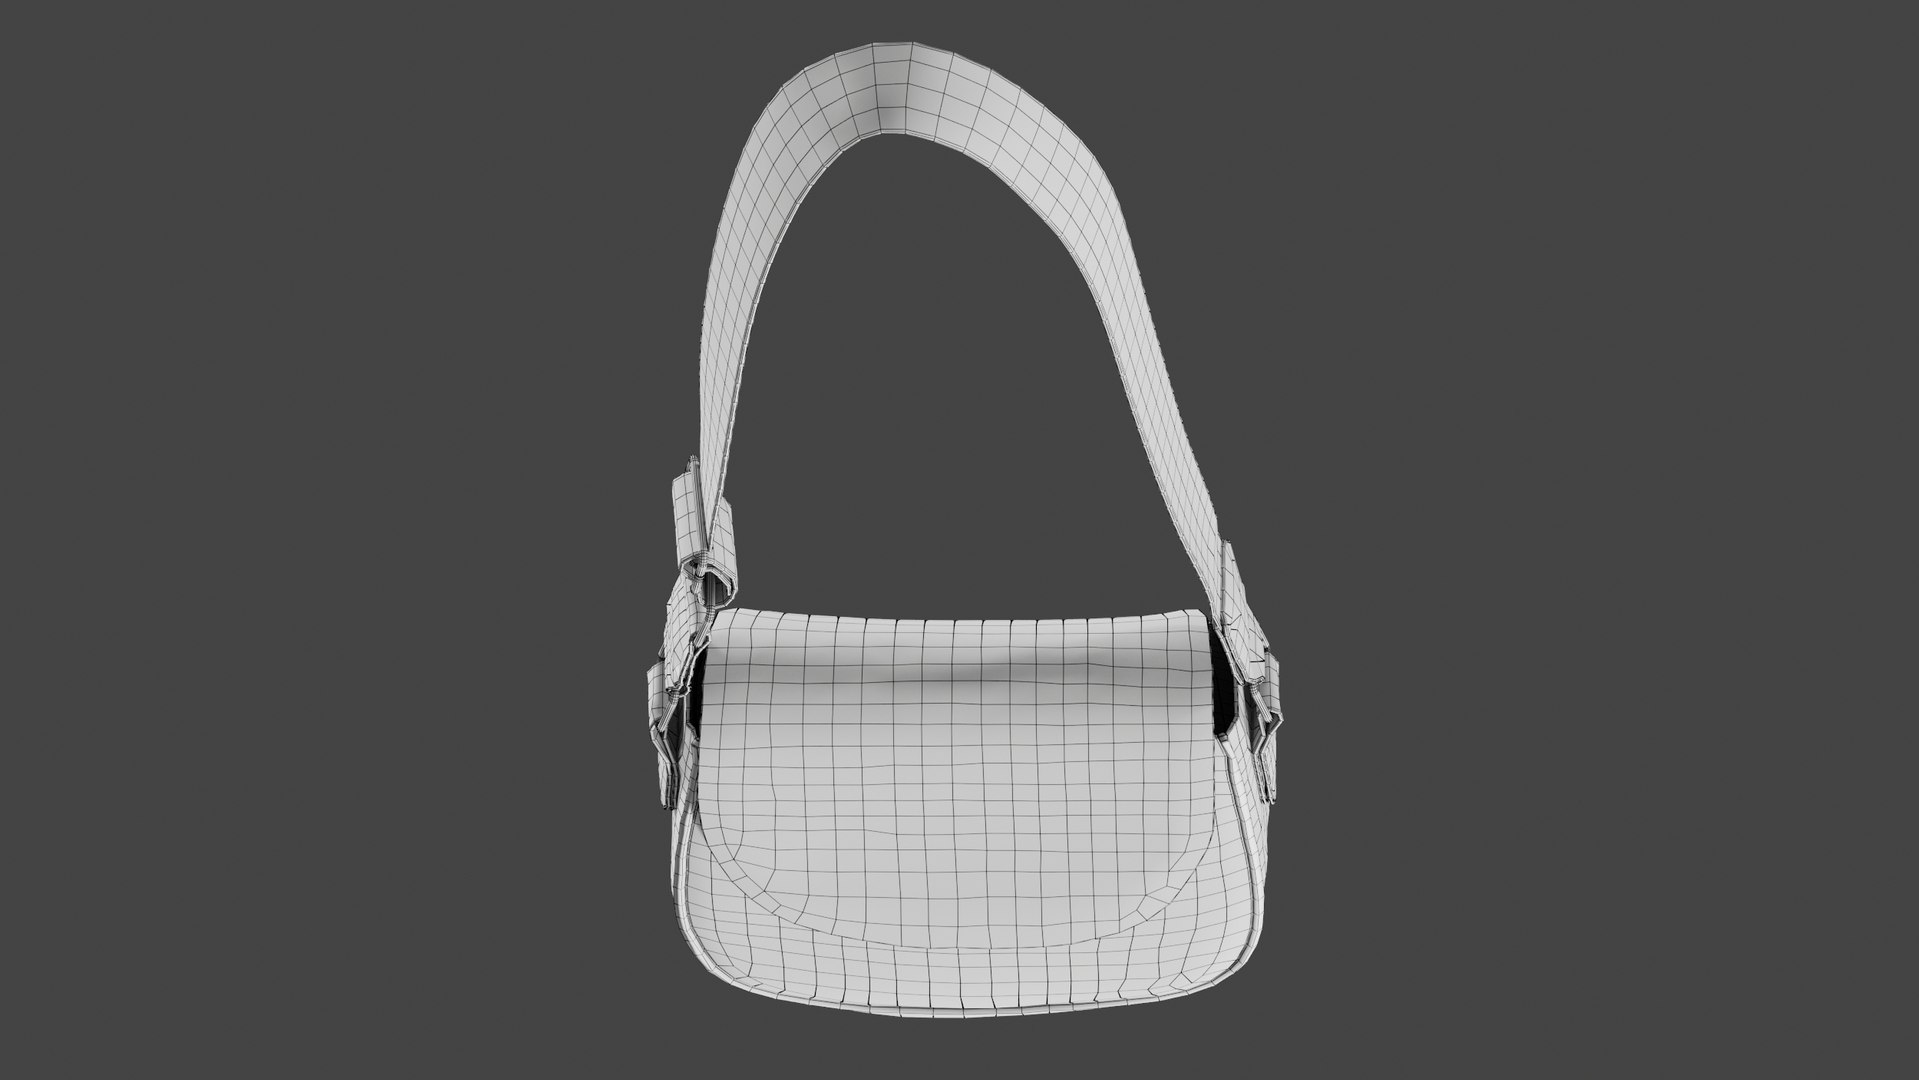 3D Model Realistic Women S Bag - TurboSquid 1619169